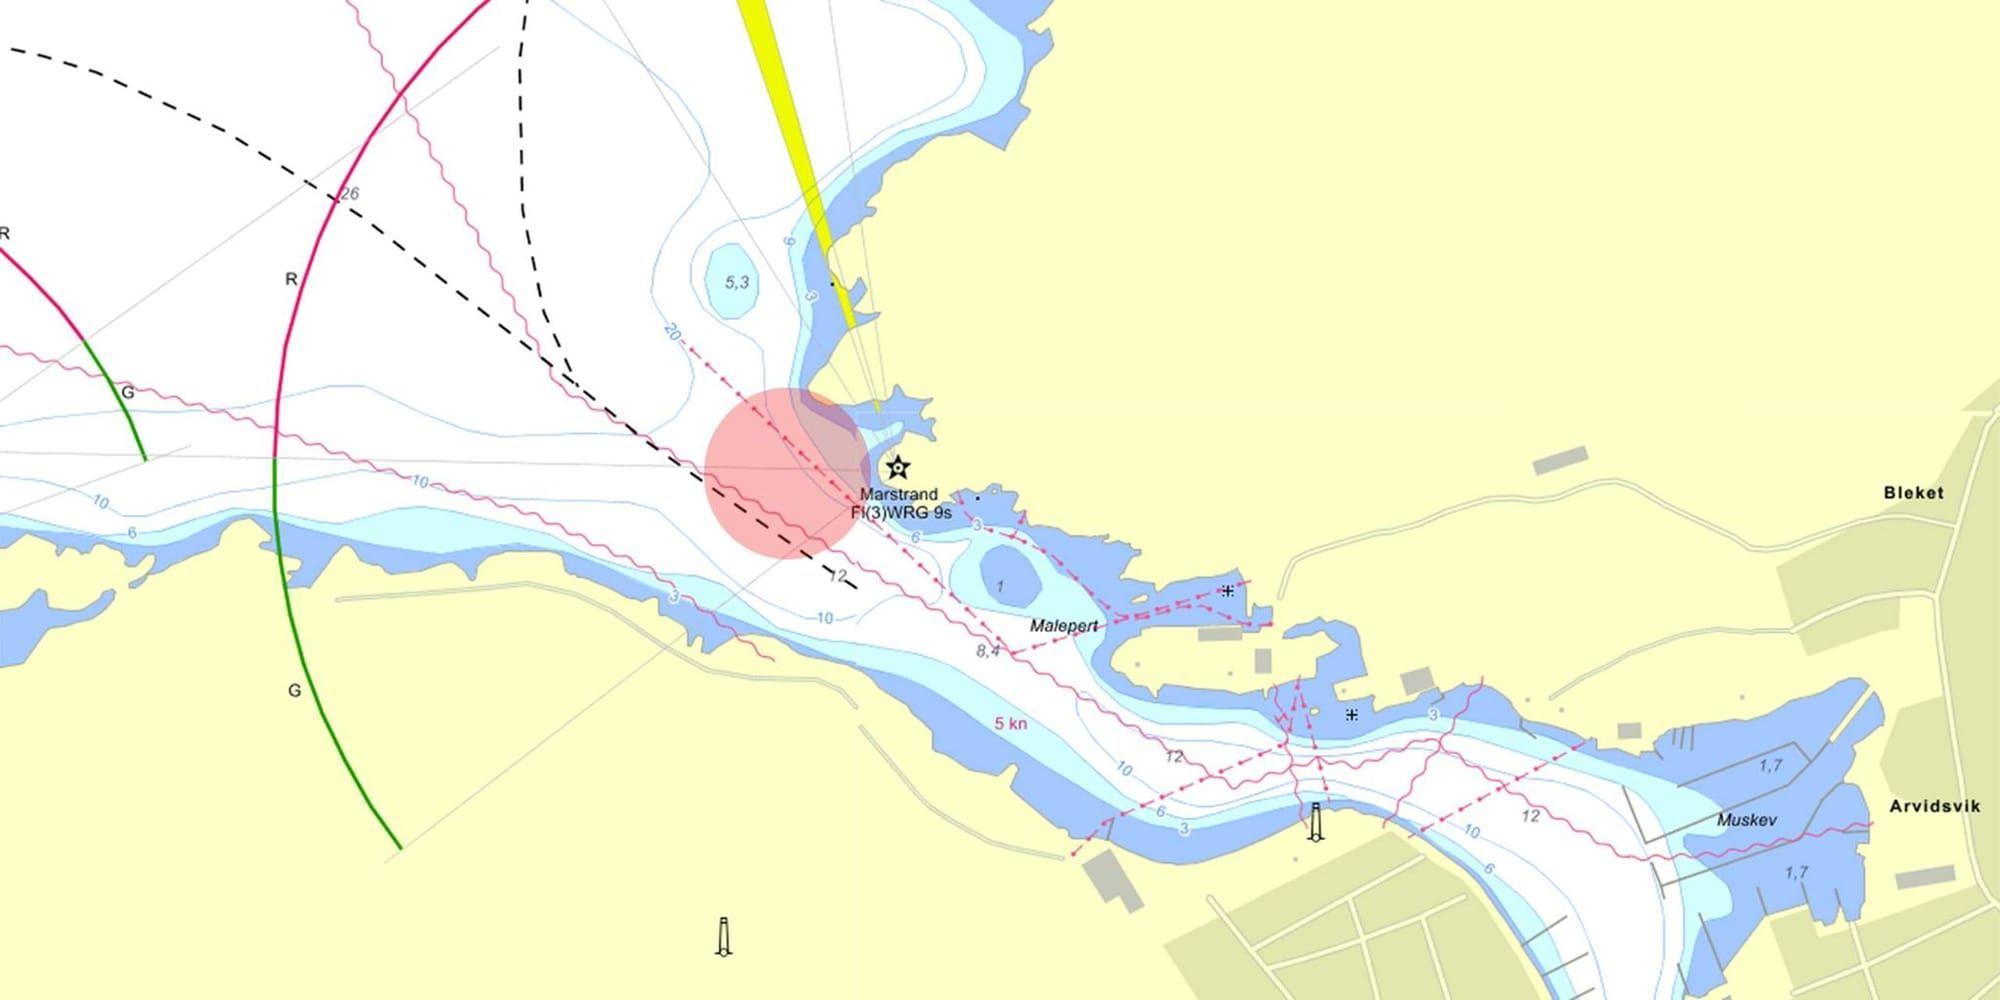 En båtolycka har inträffat nära Lyktuddens fyr vid Marstrand. Enligt larmet ska en båt kört in i en klippvägg. 